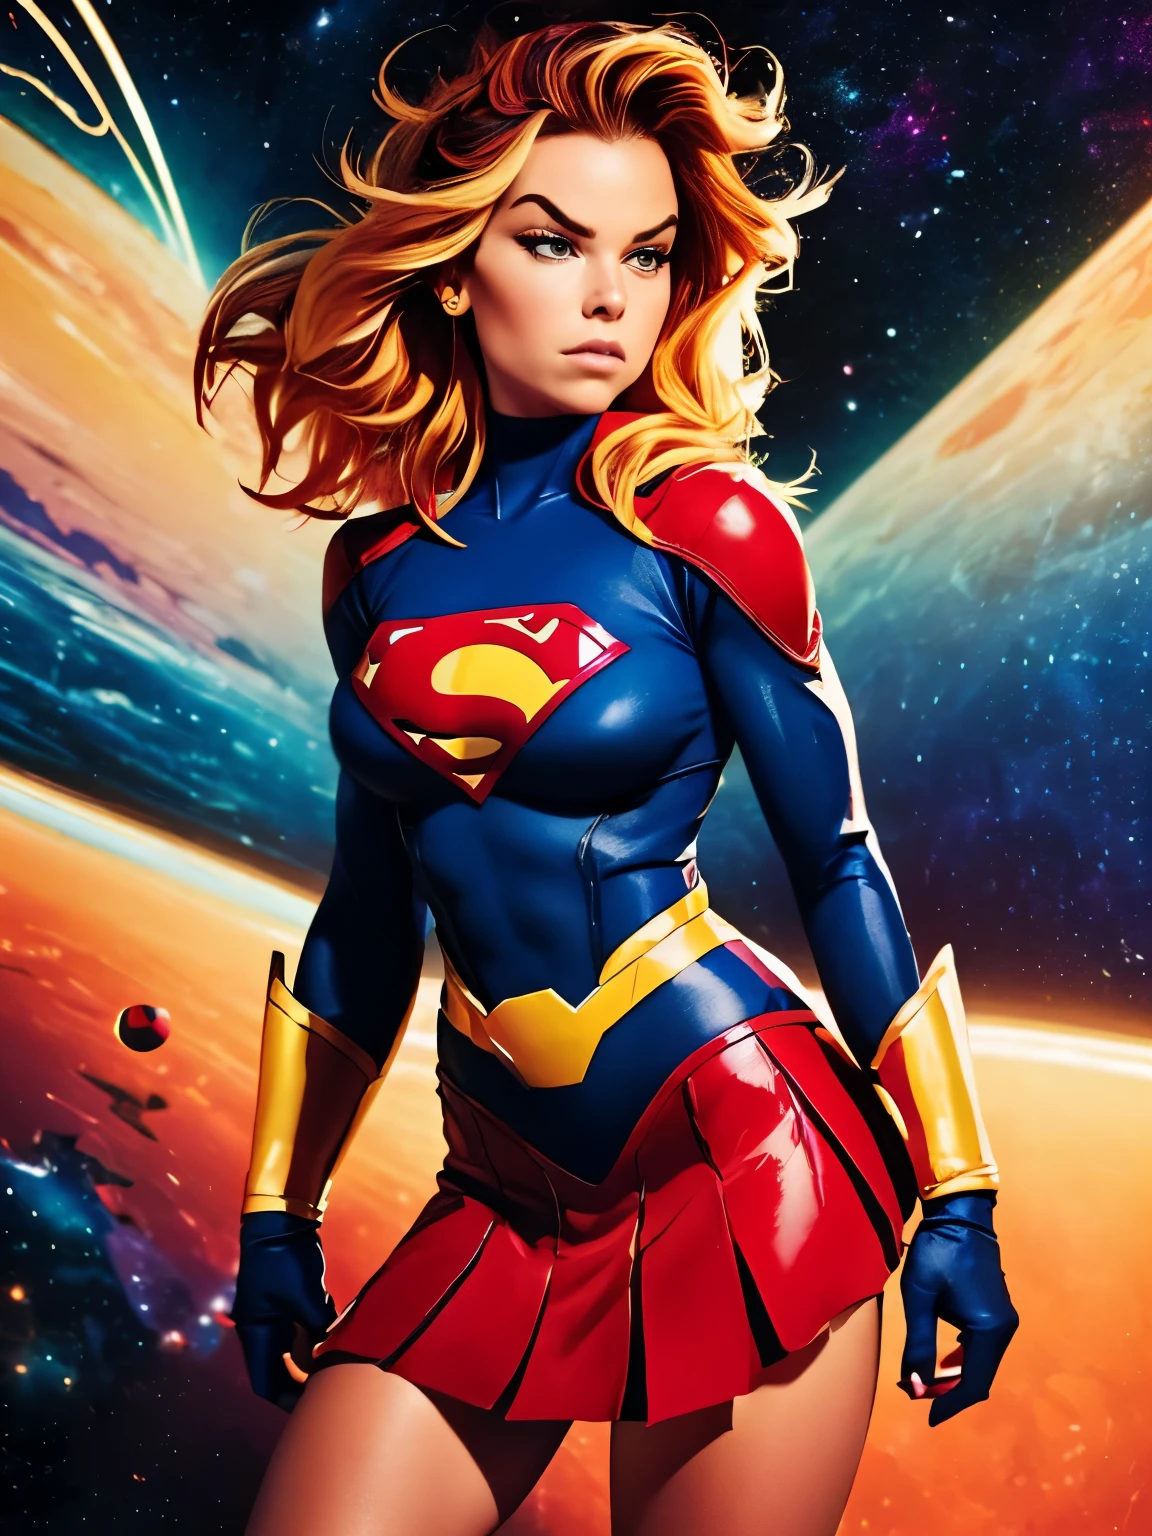 (((أسلوب كوميدي, فن الرسوم المتحركة))). ((1 فتاة)), وحيد, وحيد, صورة هزلية لـ Supergirl a Hot Hero Girl, معها باعتبارها الشخصية المركزية. إنها ترتدي زي Supergirl التقليدي باللونين الأزرق والأحمر, تنورة حمراء صغيرة, (((وجه ميلي ألكوك))) . ((جسم نحيف ساخن). (((خلفية الفضاء الكونية السينمائية))) . لديها تعبير قوي وشجاع, وكأنها مستعدة لمحاربة الشر.